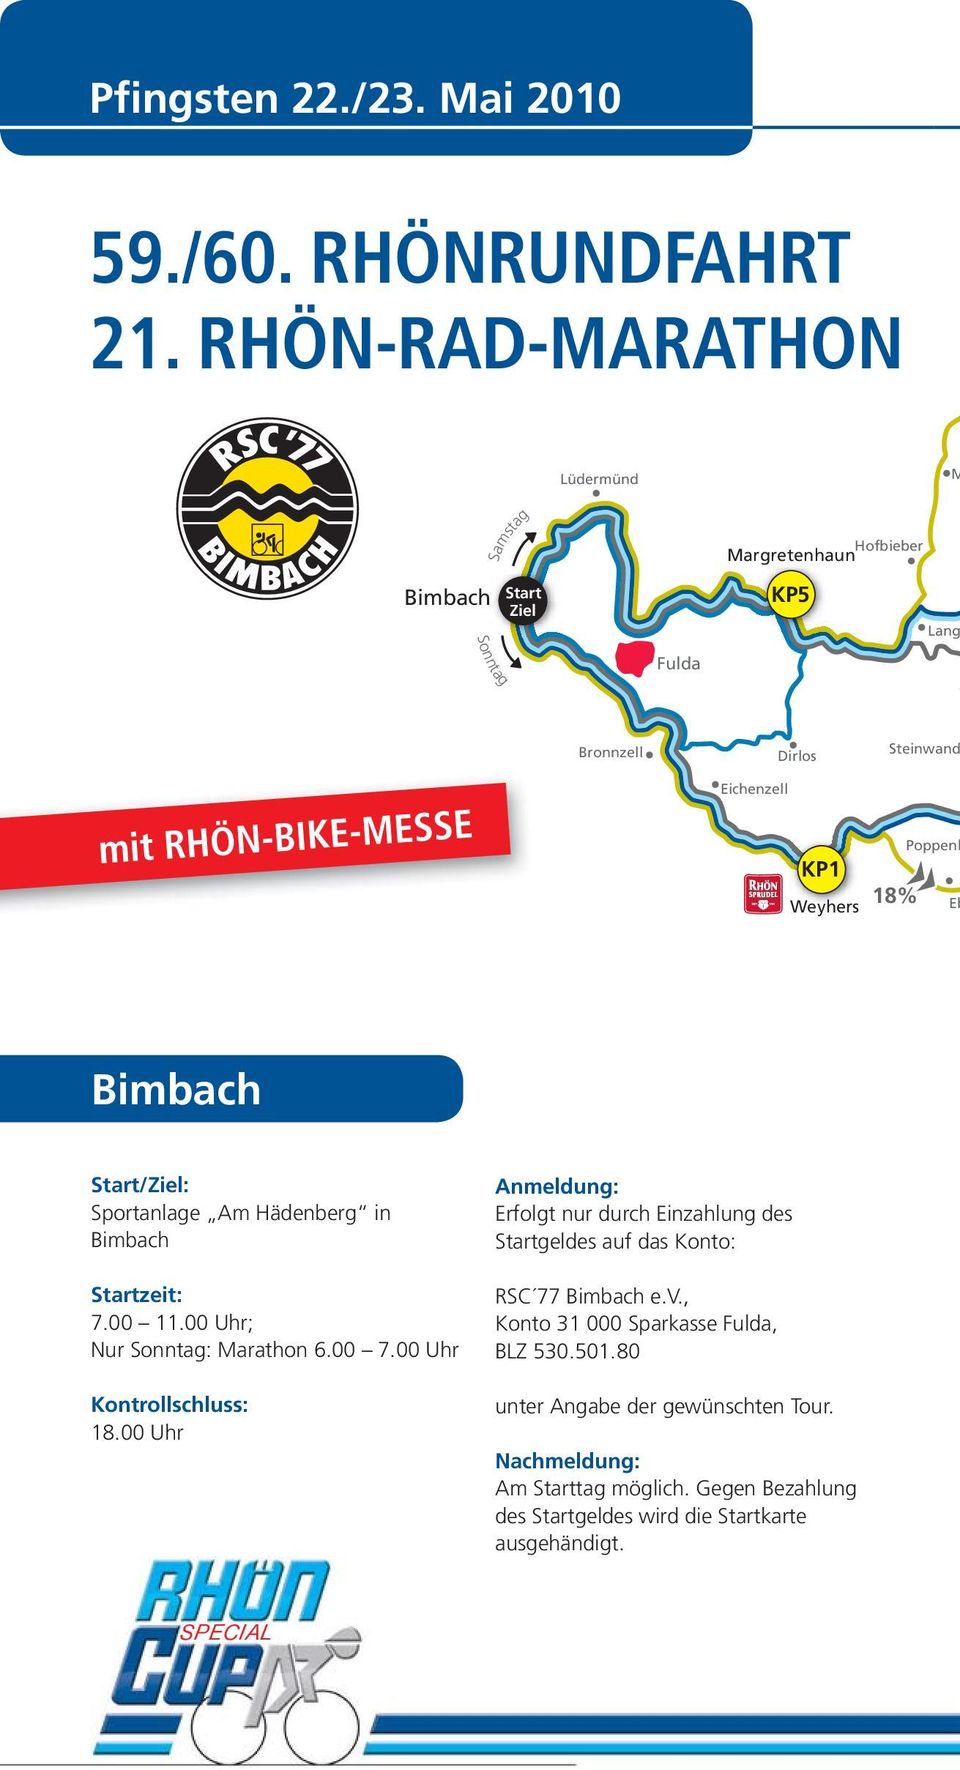 - 3 BDR Punkte 155 km - 4 BDR Punkte 210 km - Super Cup - 6 BDR Punkte Dirlos Eichenzell KP1 Weyhers Steinwand Poppenh 18% Eb Bimbach Start/Ziel: Sportanlage Am Hädenberg in Bimbach Startzeit: 7.